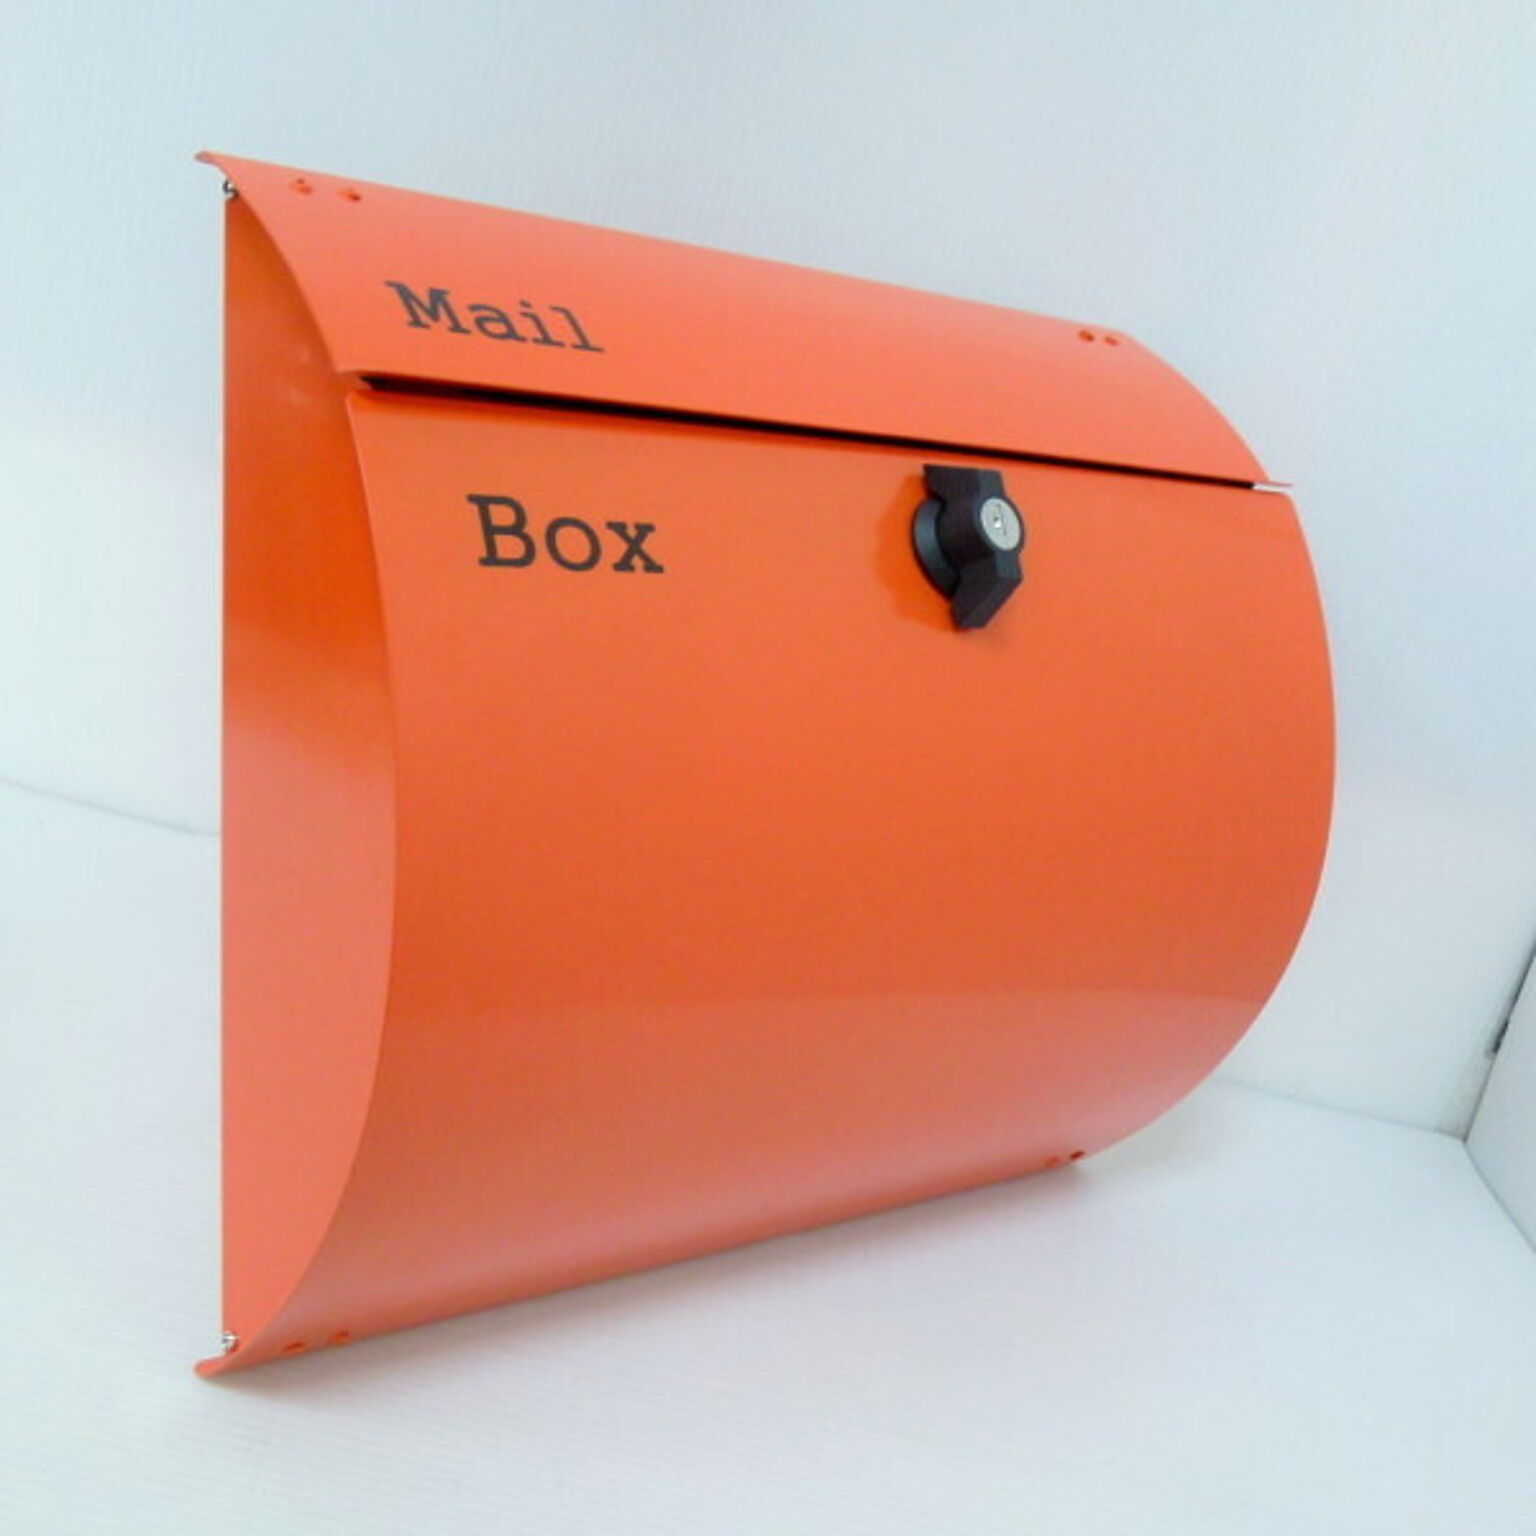 郵便ポスト郵便受けメールボックス壁掛けオレンジ色プレミアムステンレスポスト(orange)